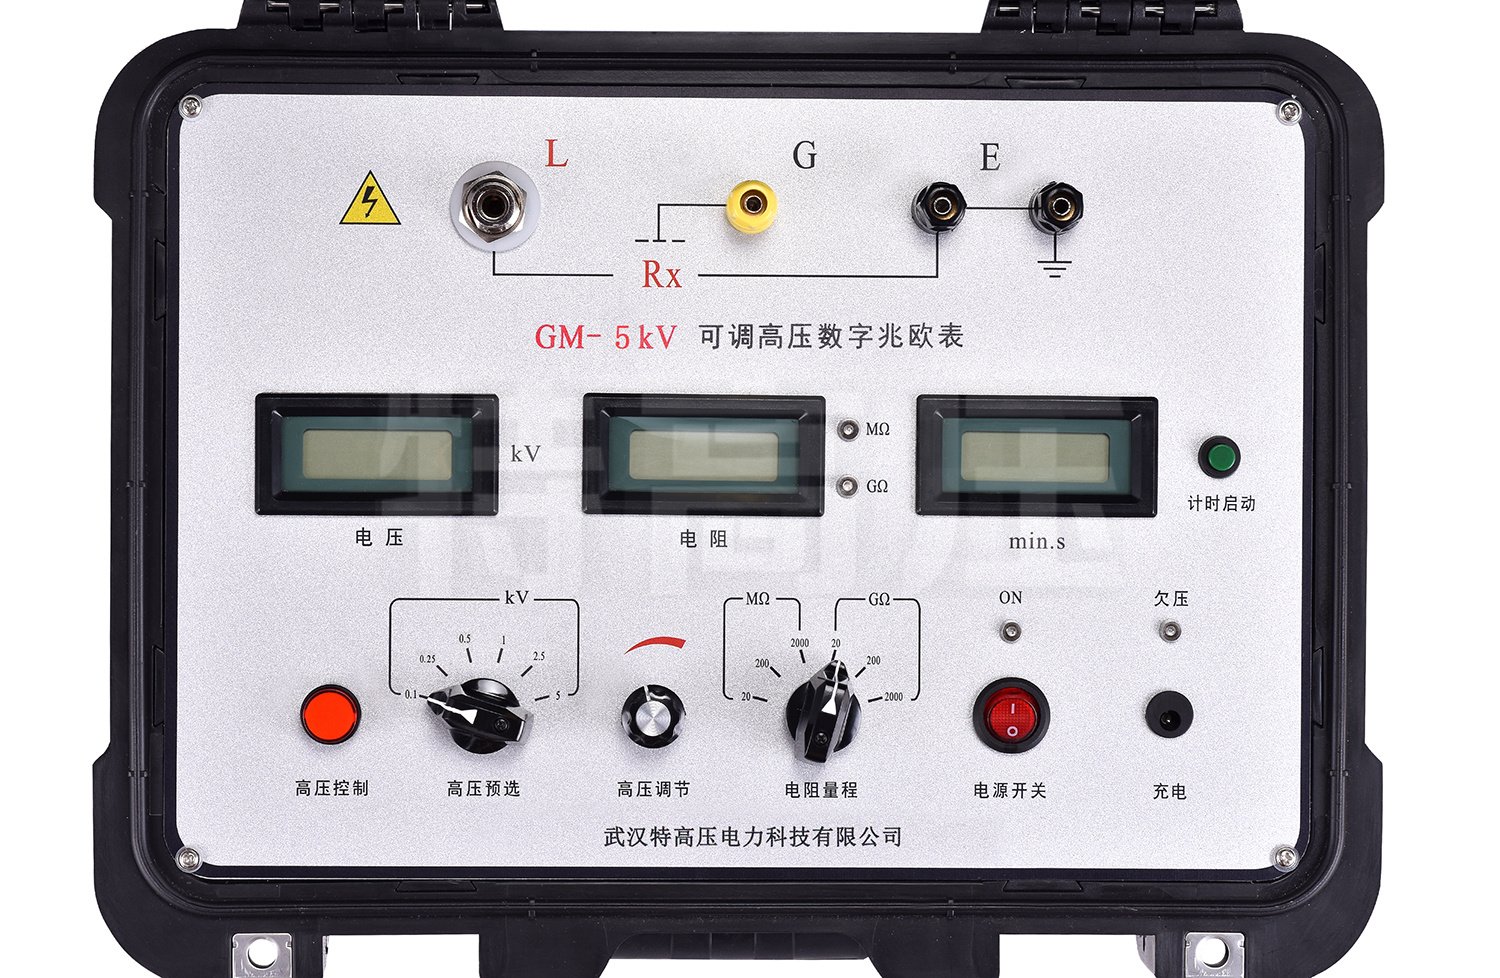 GM-5kV 可调高压数字兆欧表